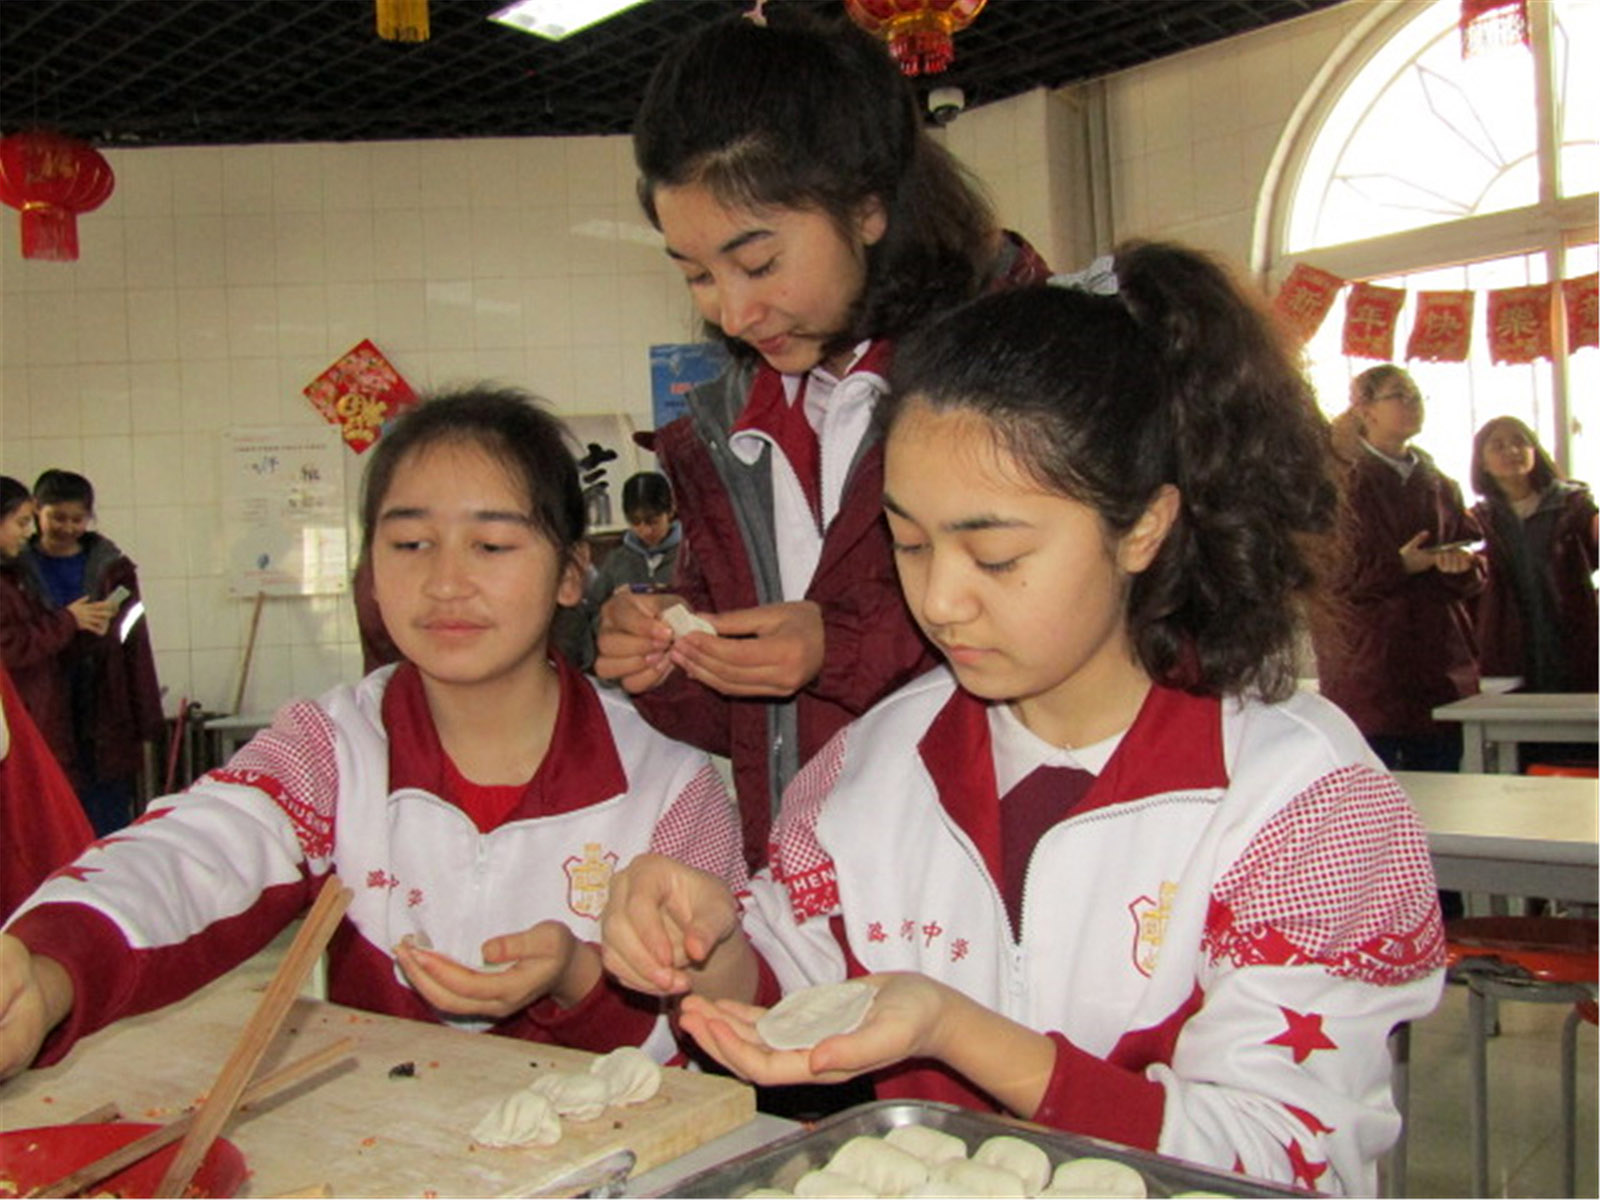 古麗切合熱·艾尼(高中組)新疆《此刻的溫暖》 維吾爾族同學寒假沒有回家，春節與漢族學生一起包餃子過年，感受漢民族中國年文化的樂趣。搜索復制